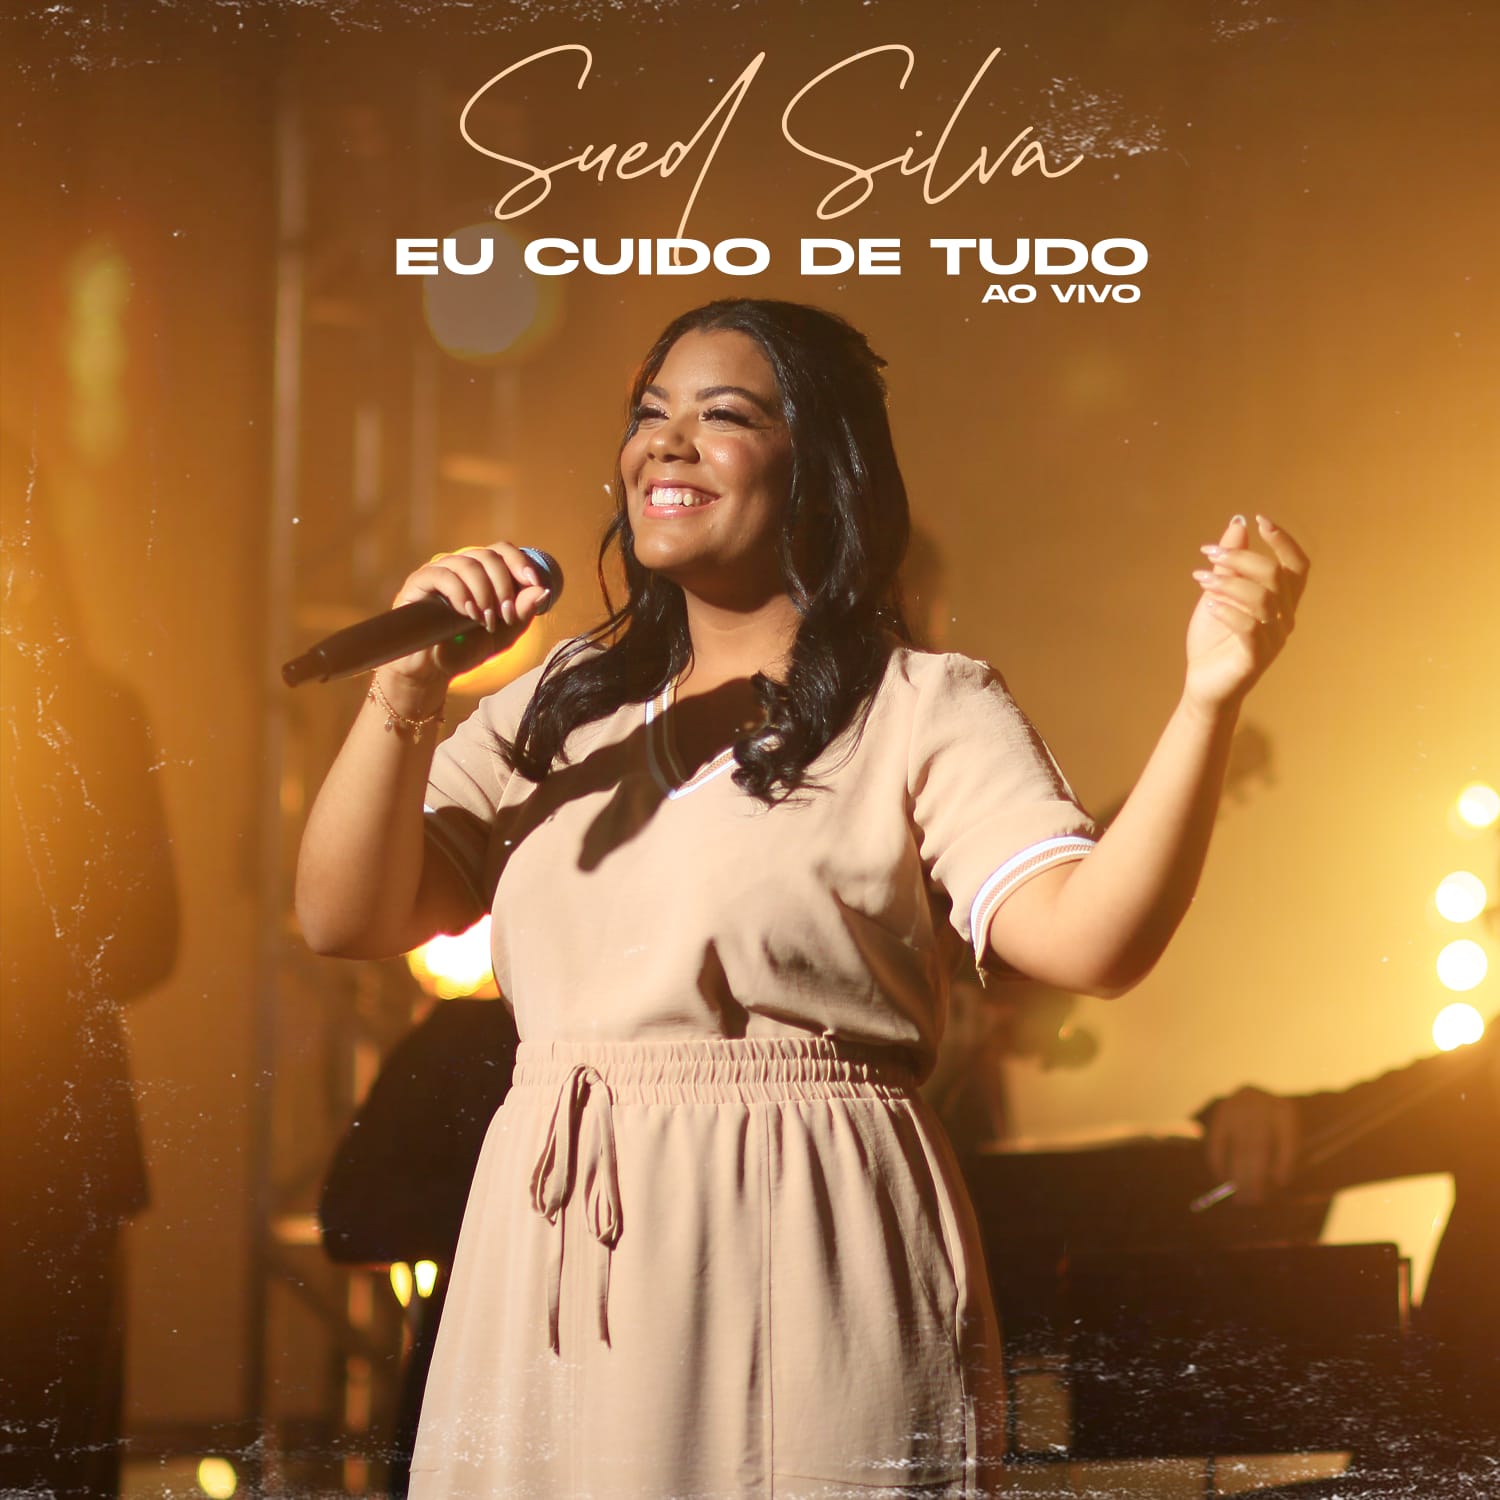 Sued Silva canta o cuidado e o amor de Deus em meio ao caos